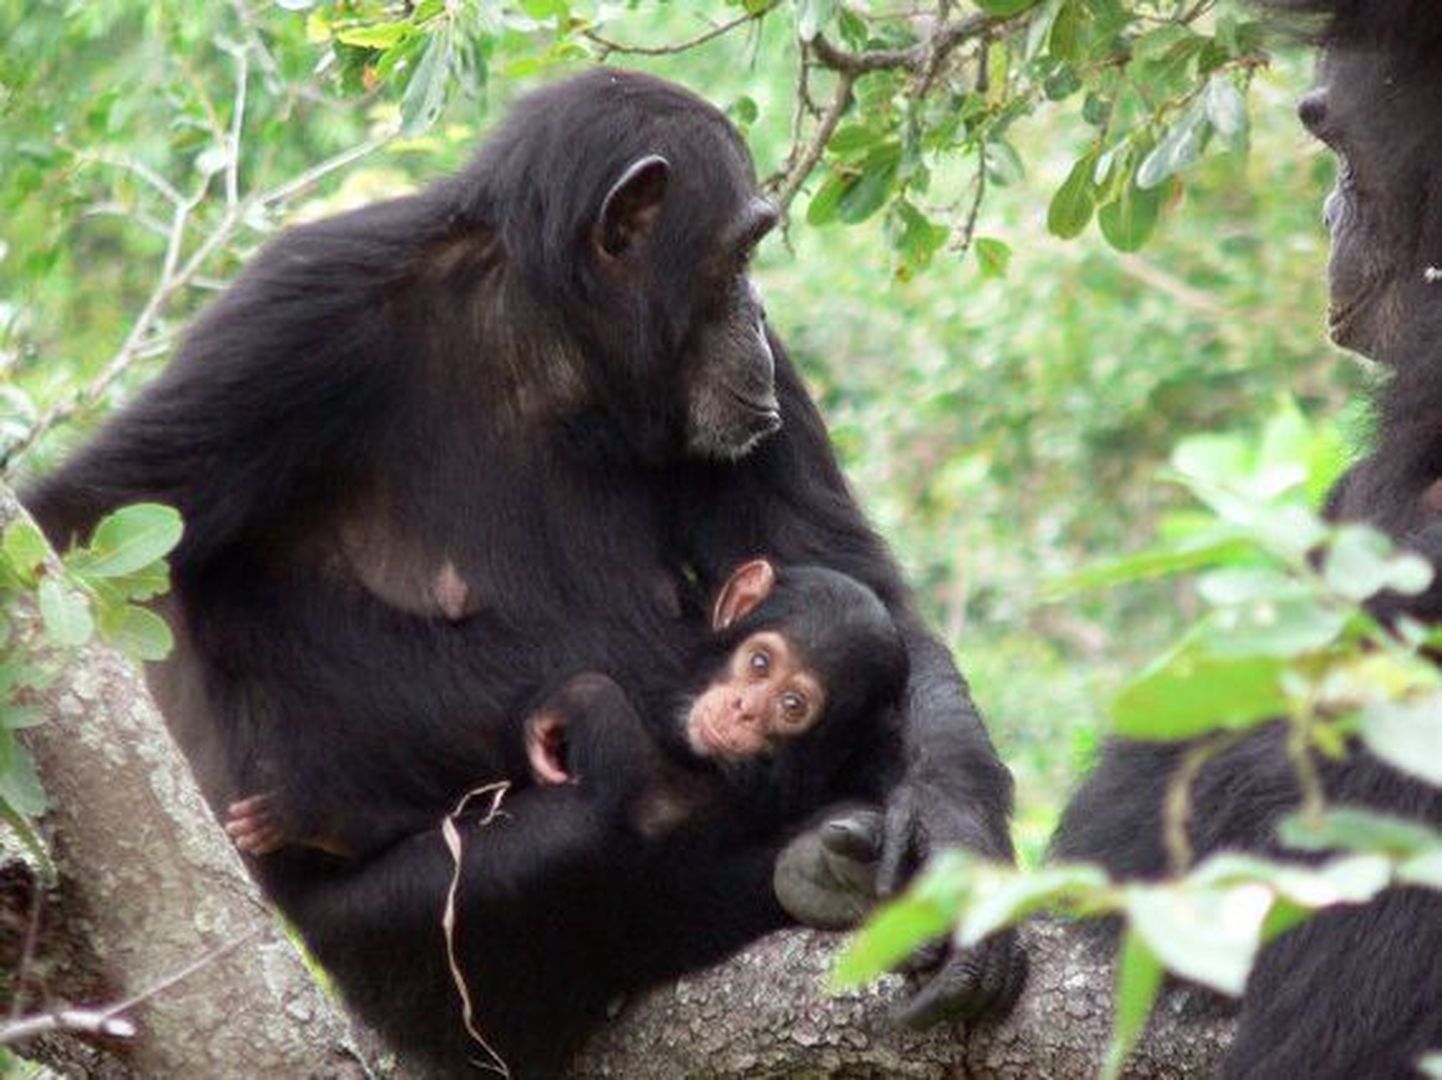 Tansaanias Gombe rahvuspargis elavad šimpansid